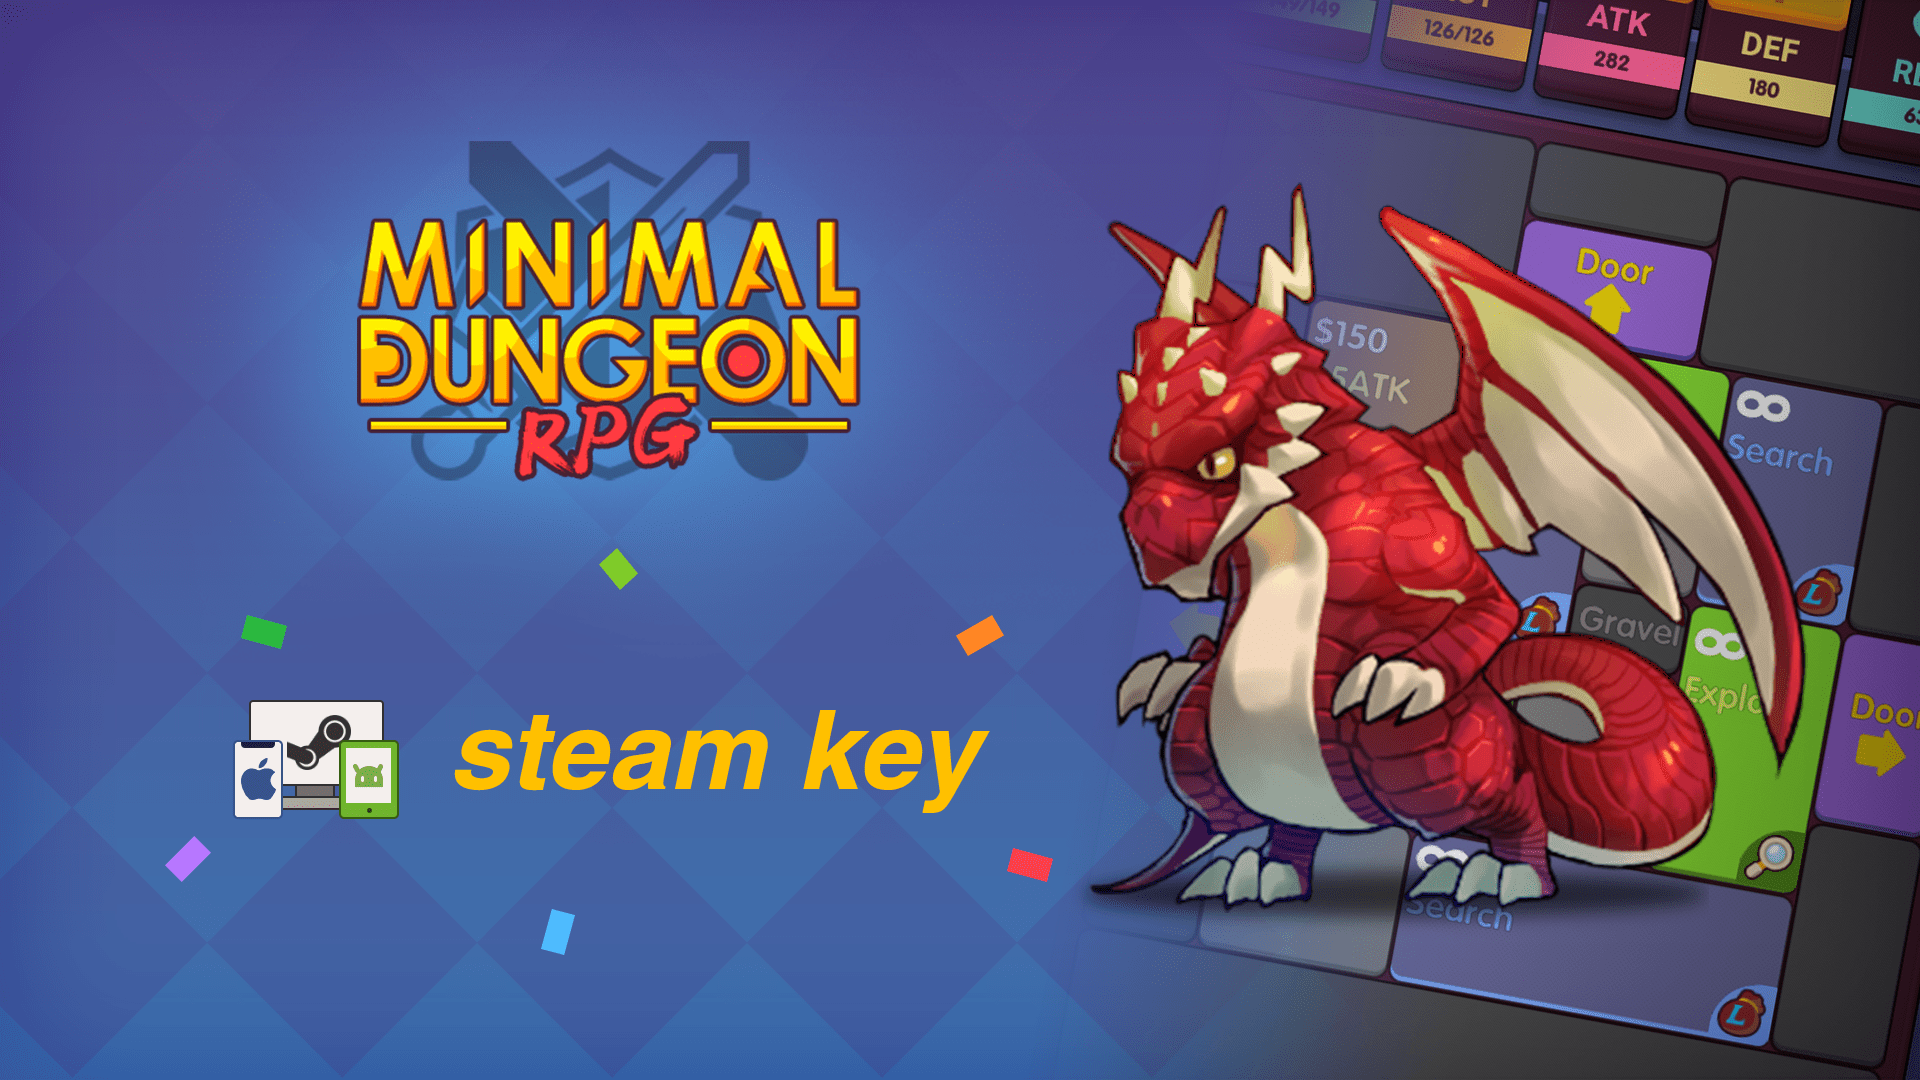 Minimal Dungeon RPG Steam Key Giveaway!